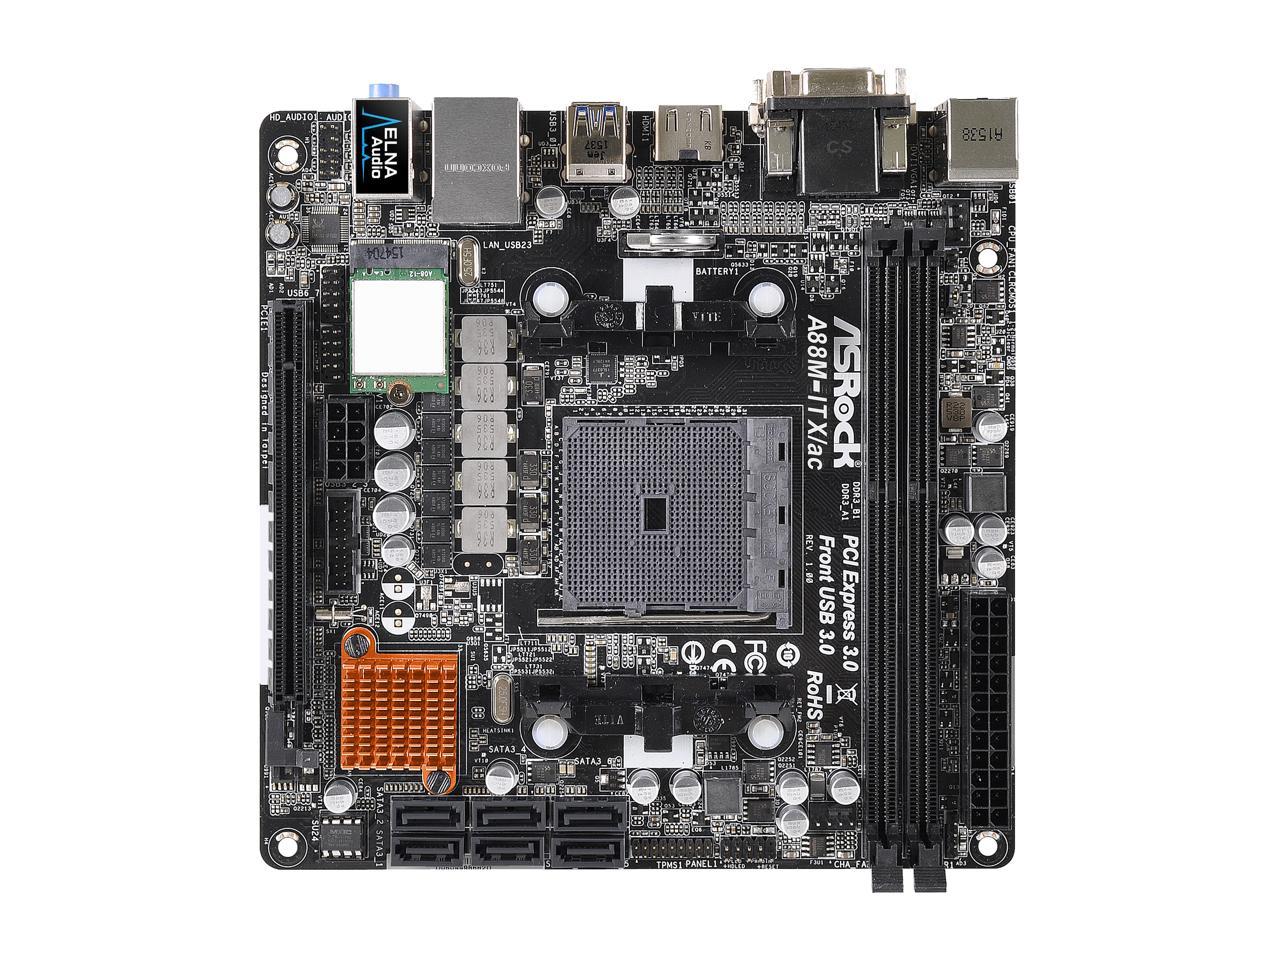 ASRock A88M-ITX/ac FM2+ / FM2 Mini ITX AMD Motherboard - Newegg.com